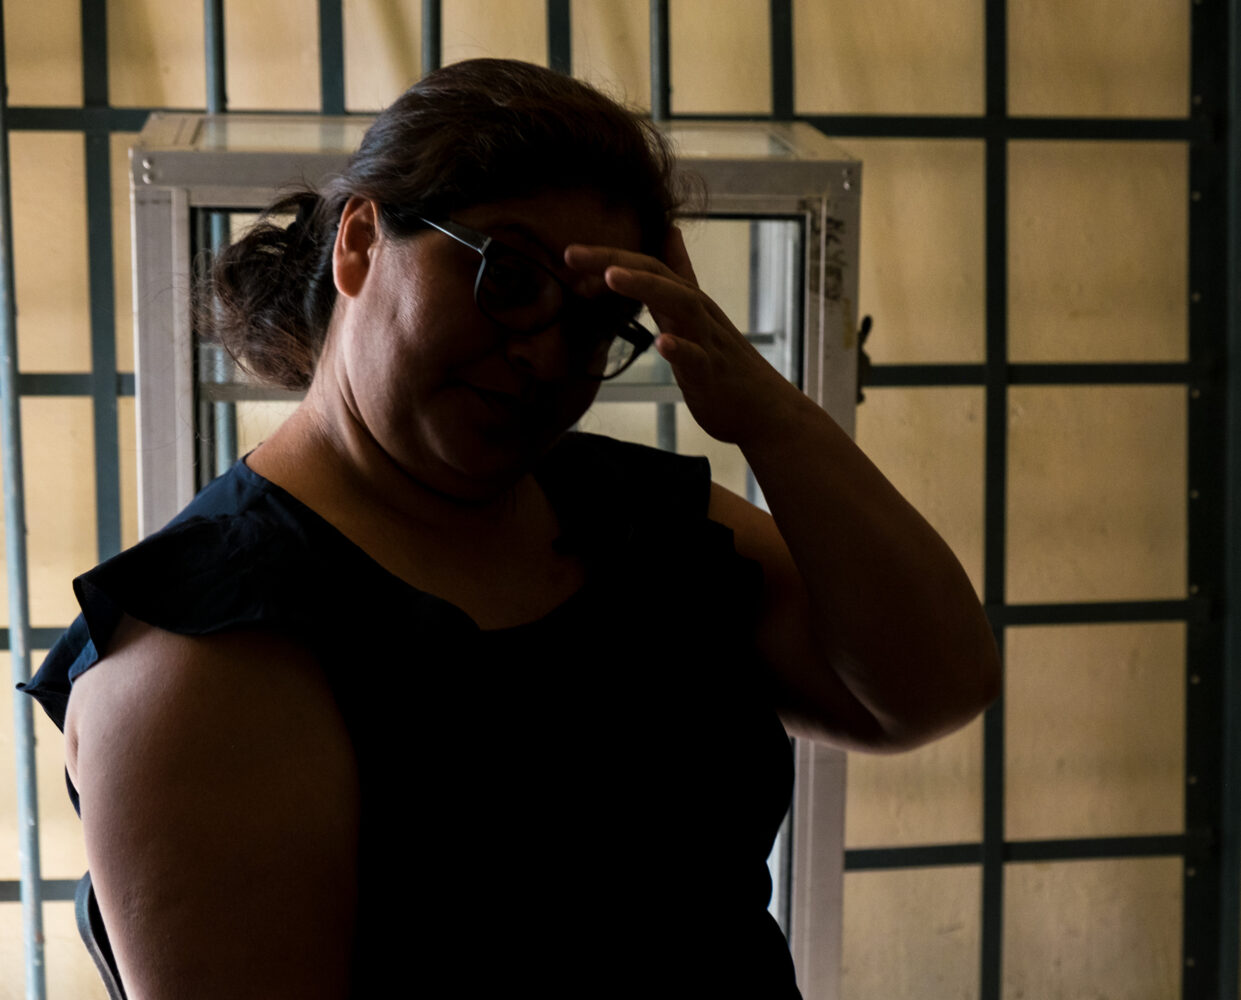 Fernanda, travailleuse domestique victime de violences sexuelles est soutenue par l'ONG CARE